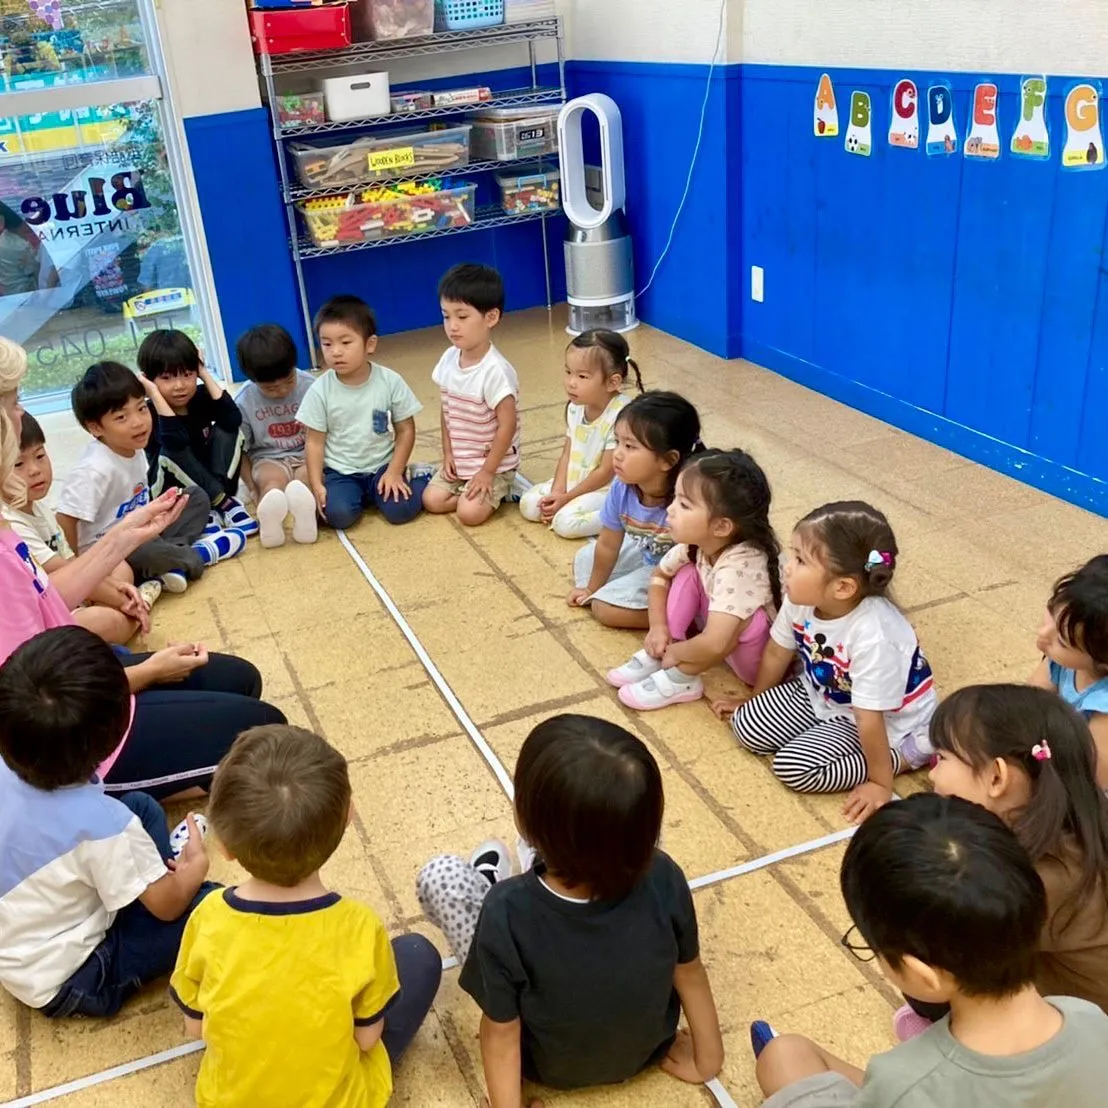 10/3(火) Kinder class today 